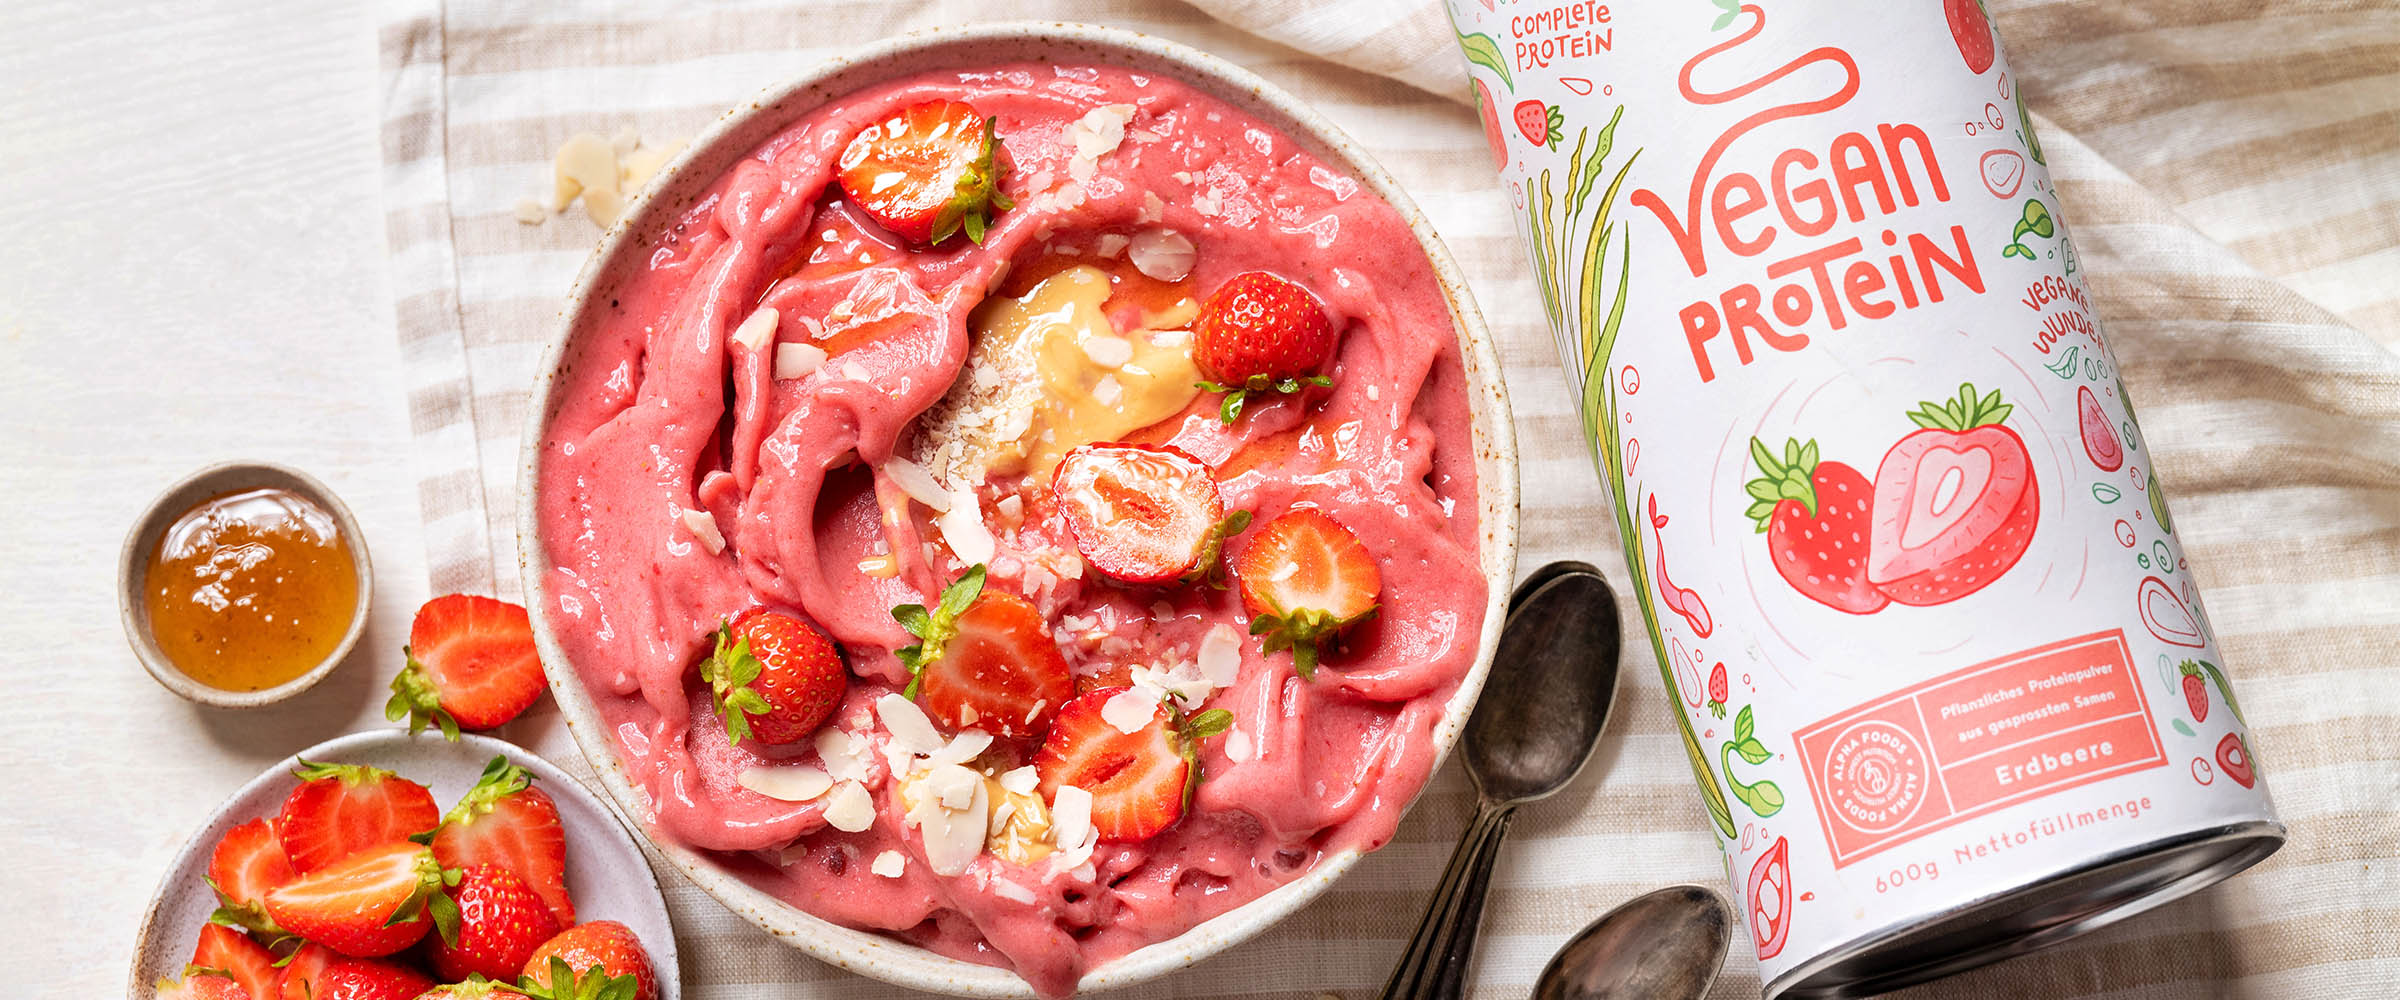 Fruchtig-frische, gesunde Erdbeerprotein-Eiscreme